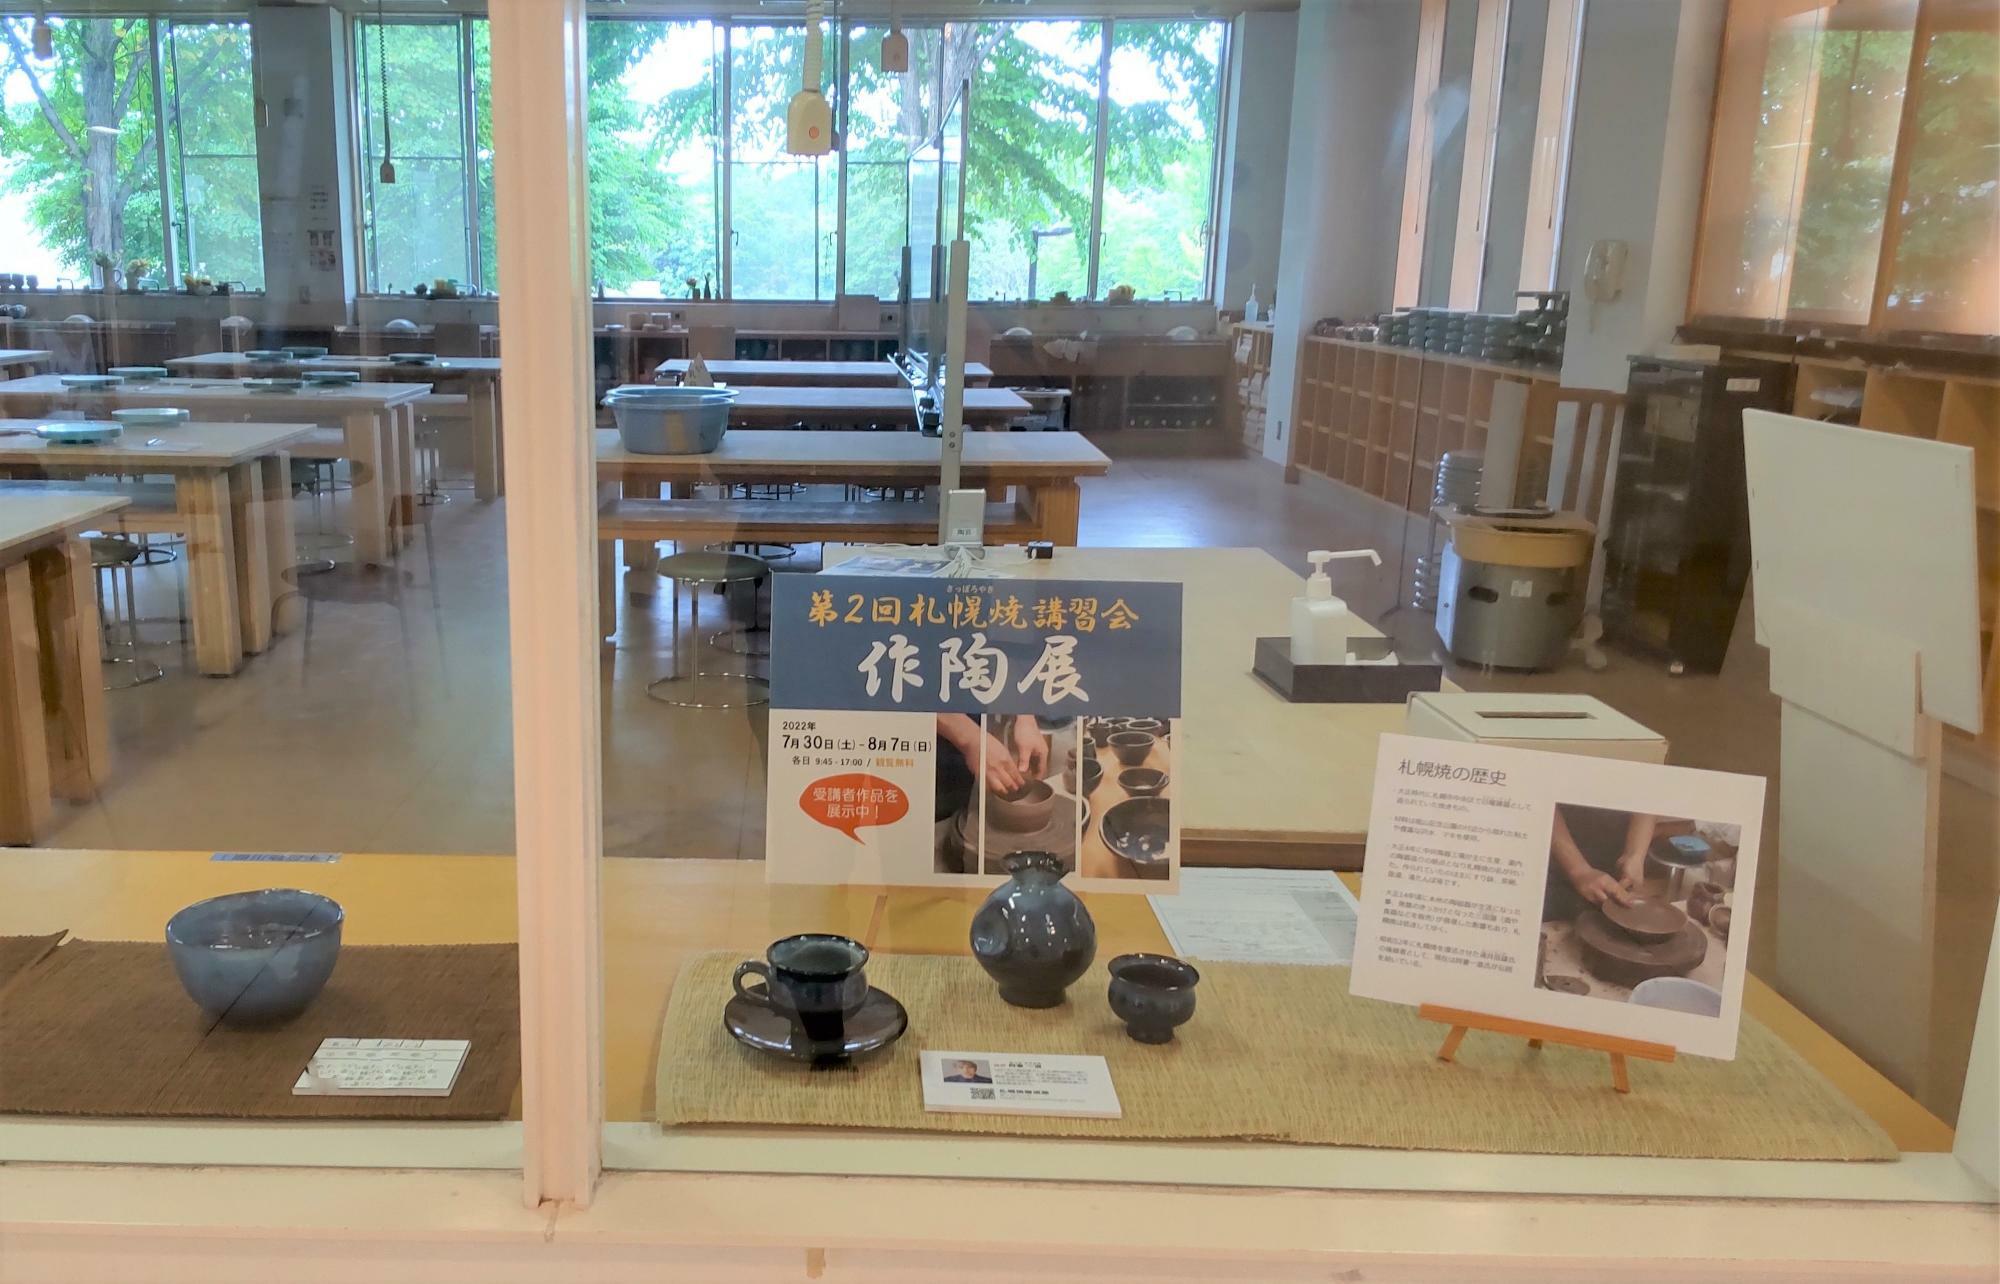 作陶した陶芸工房内での展示でした。